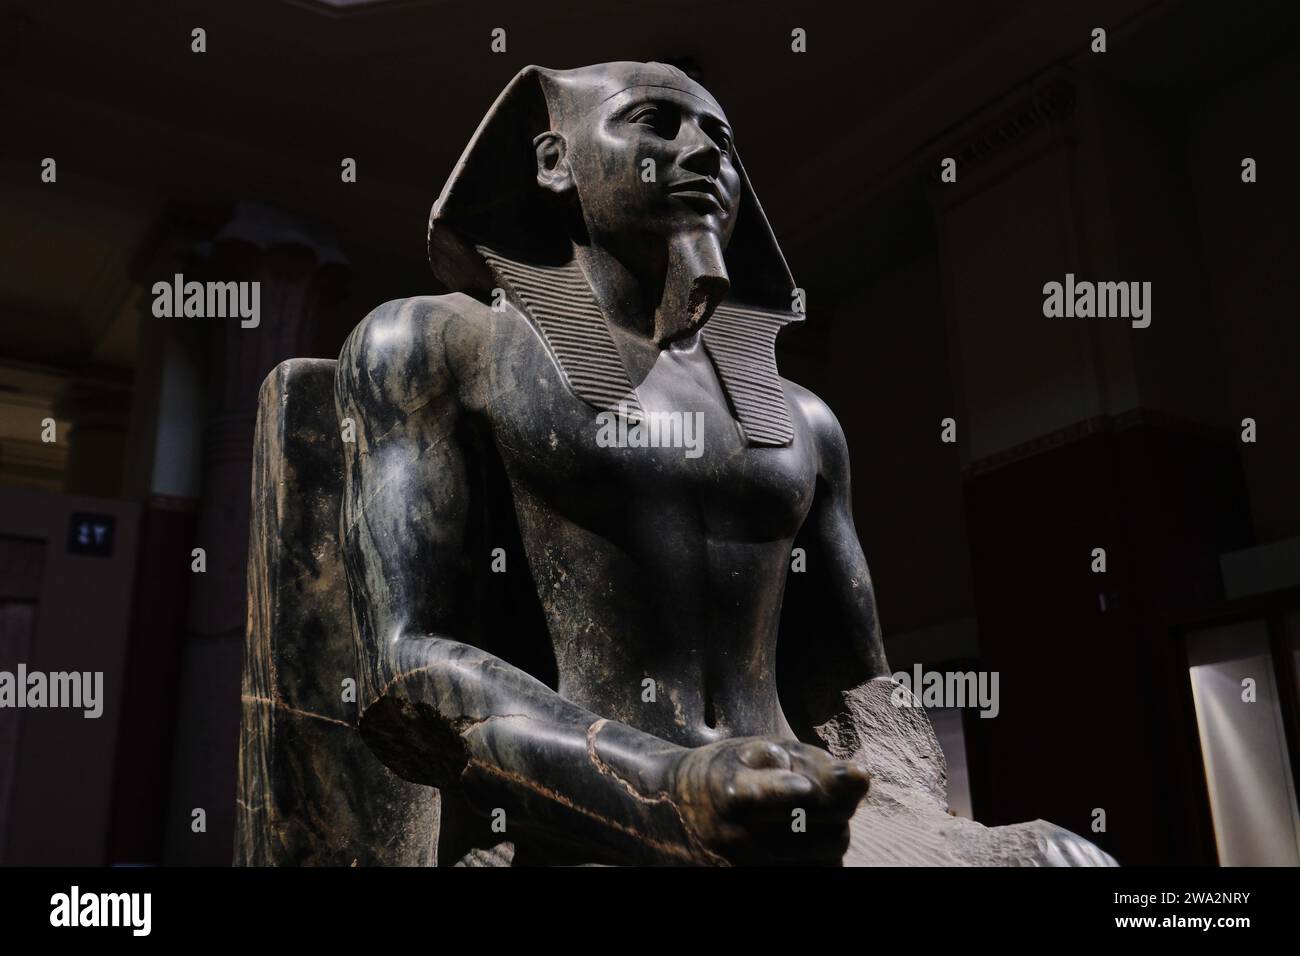 Cairo, Egitto - 2 gennaio 2024: Statua del faraone khafre in trono nel museo egizio del cairo, simbolo iconico dell'antica arte egiziana Foto Stock